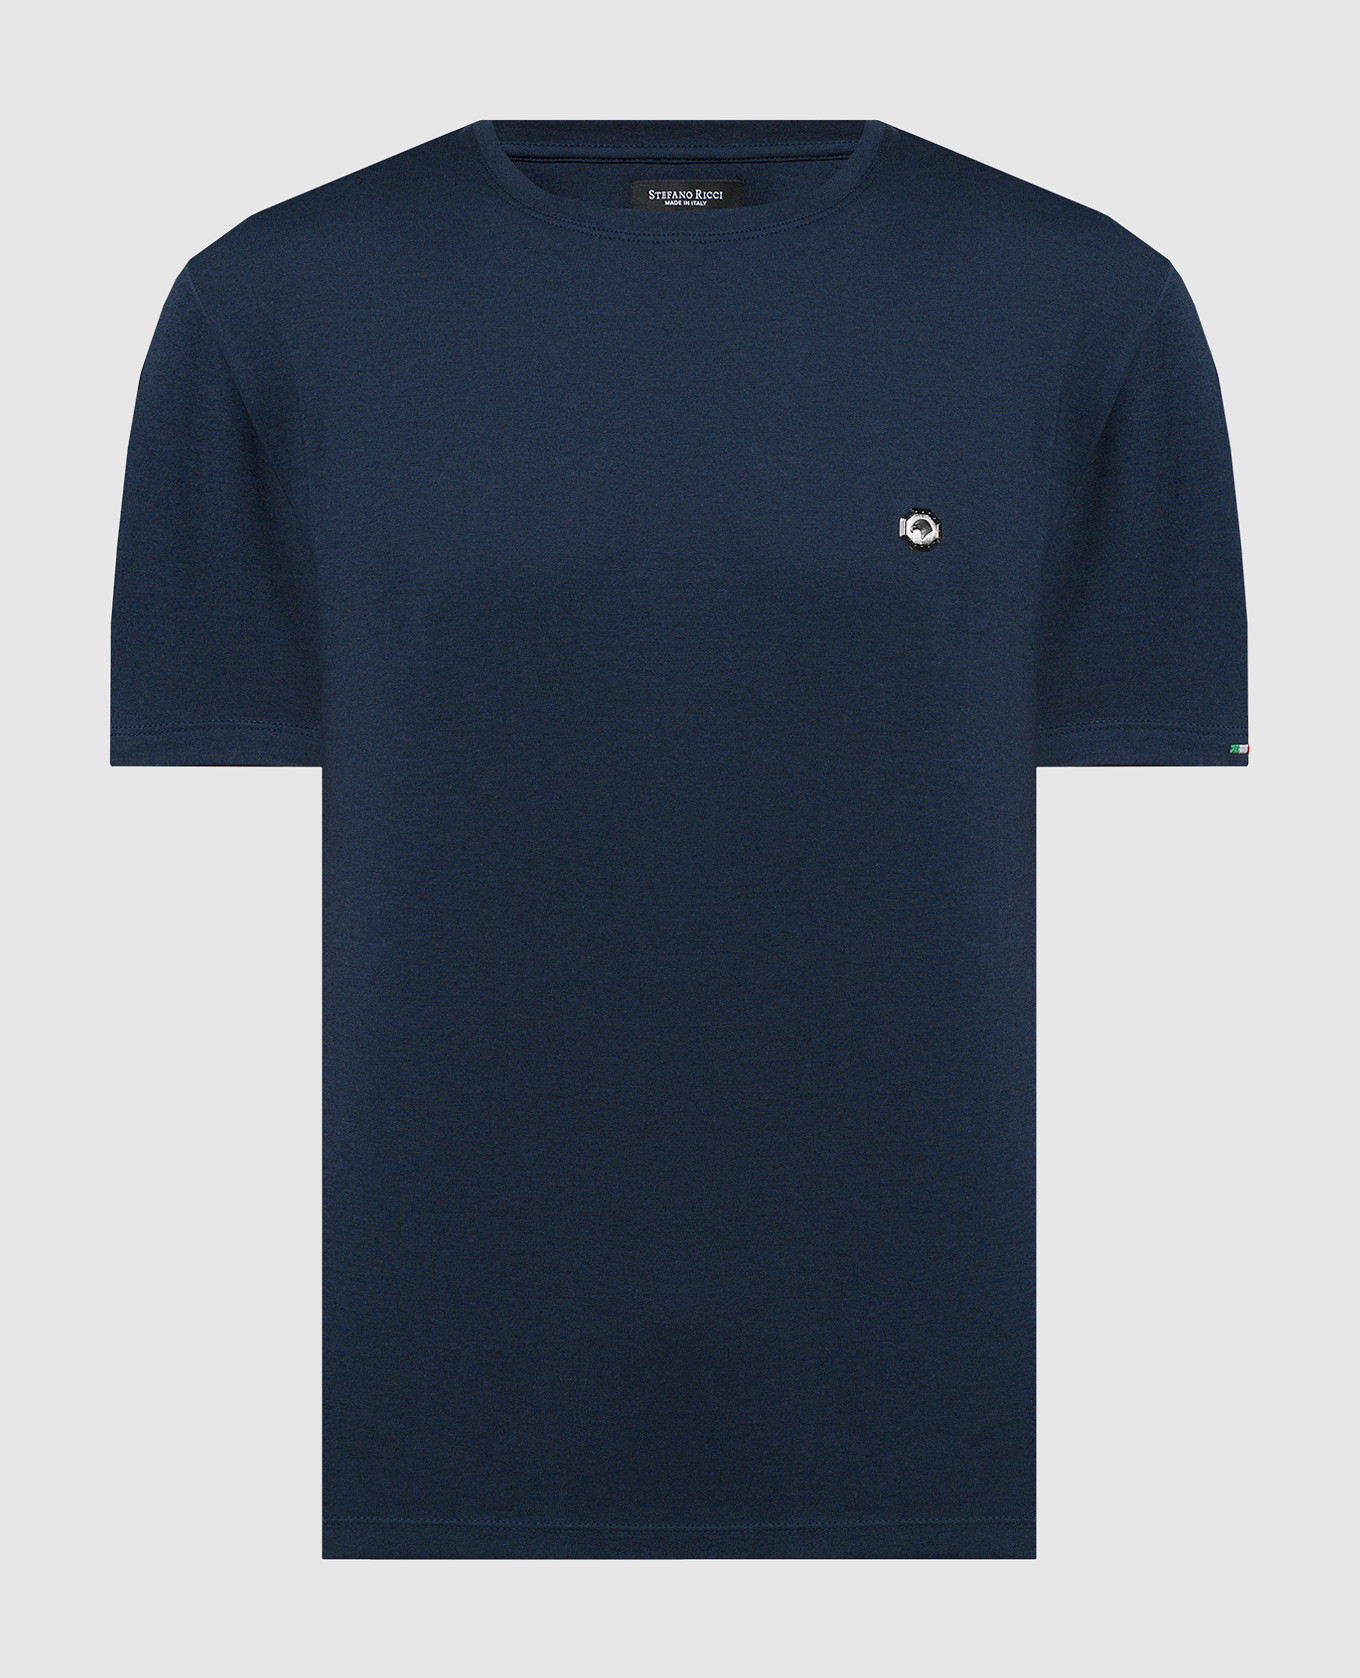 Синяя футболка с металлической эмблемой логотипа